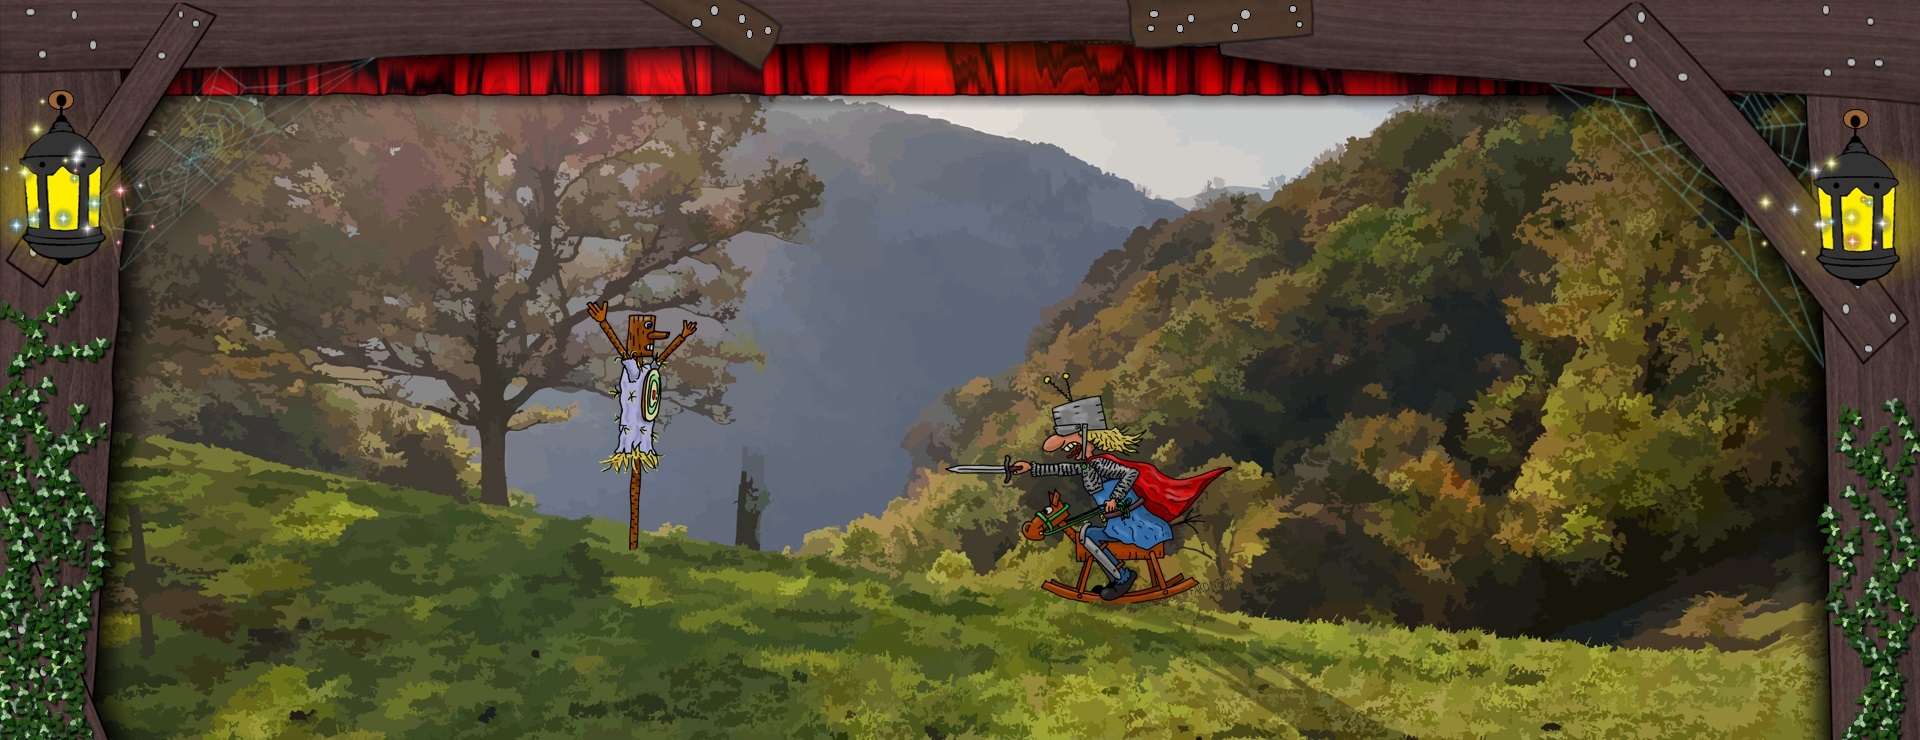 Bannerbild - Ein Ritter auf einem Schaukelpferd auf einer Waldlichtung